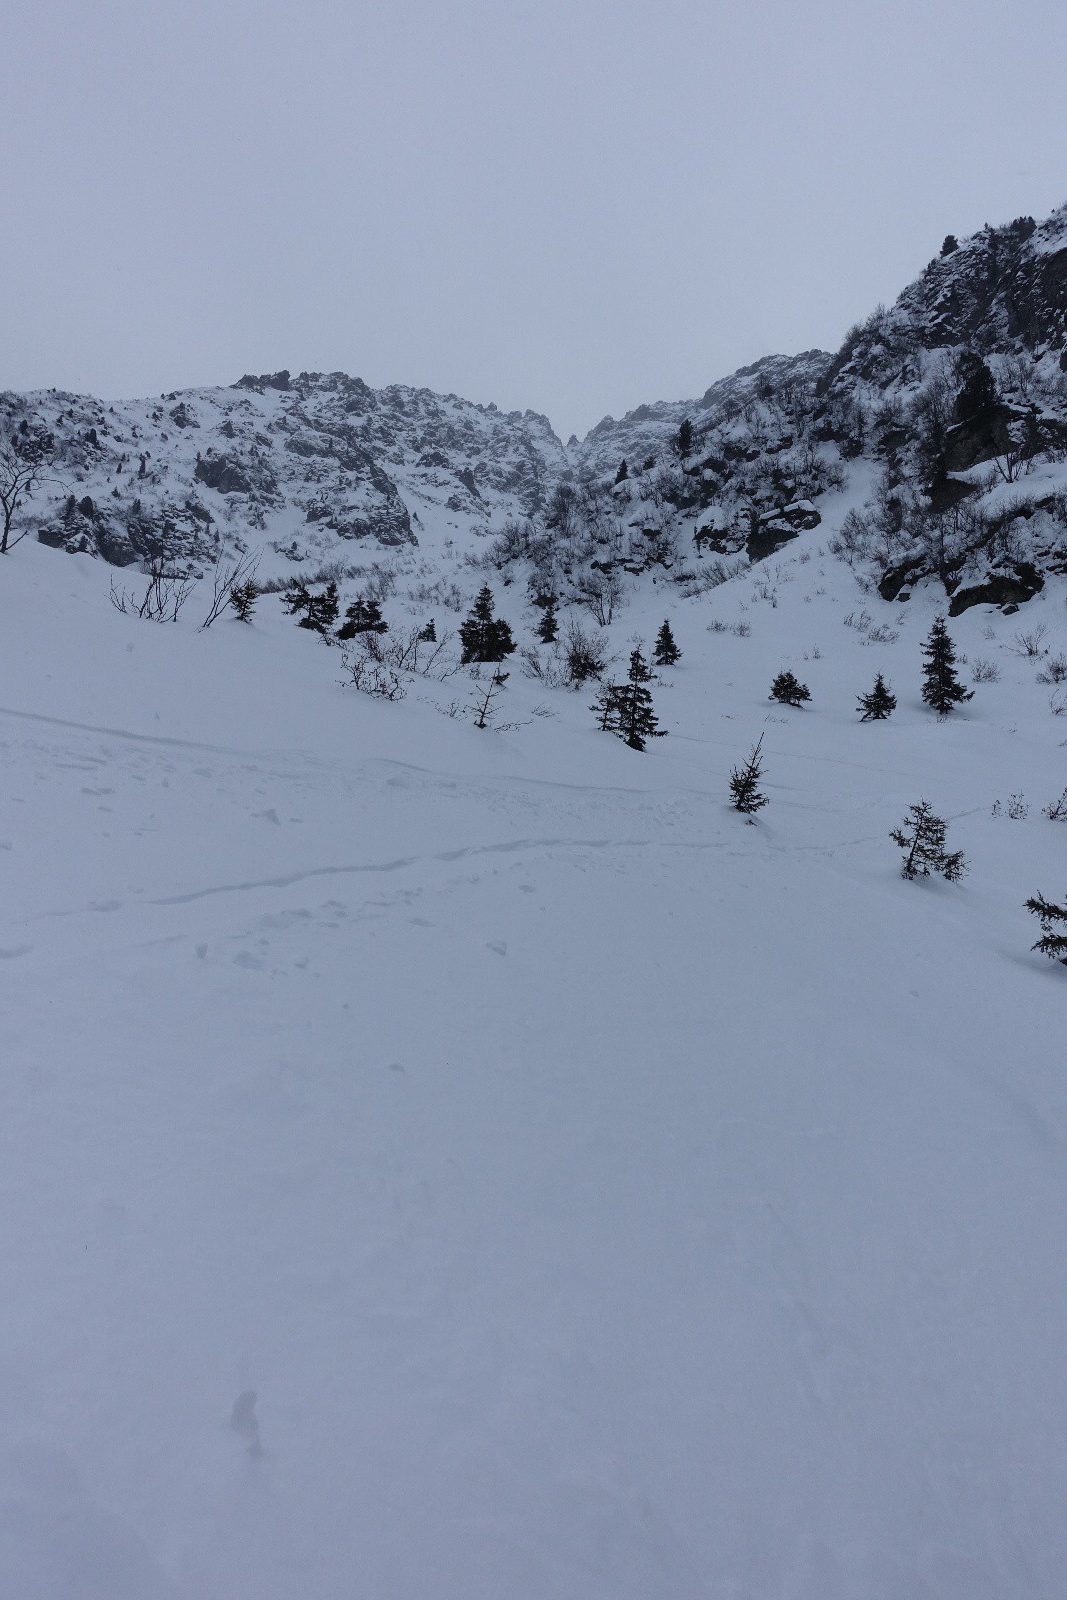 C'est ici la fin du bon ski (1700m environ)